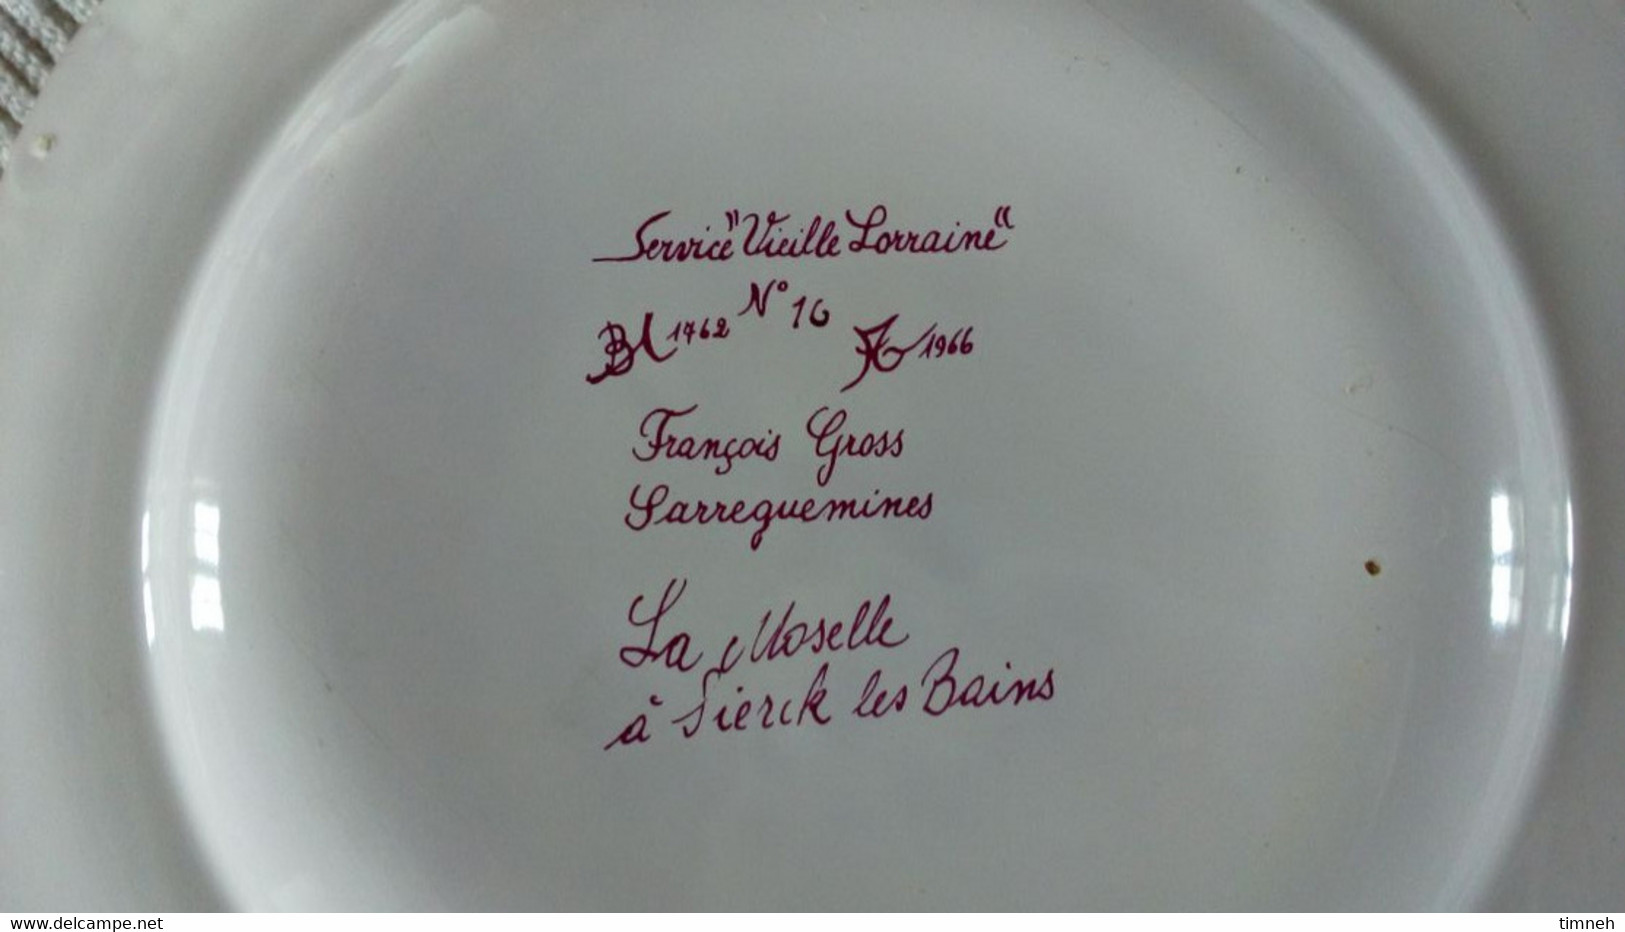 François GROSS Sarreguemines Assiette Plate MOSELLE SIERCK LES BAINS Service Vieille Lorraine 1966 Bicentenaire - Sarreguemines (FRA)